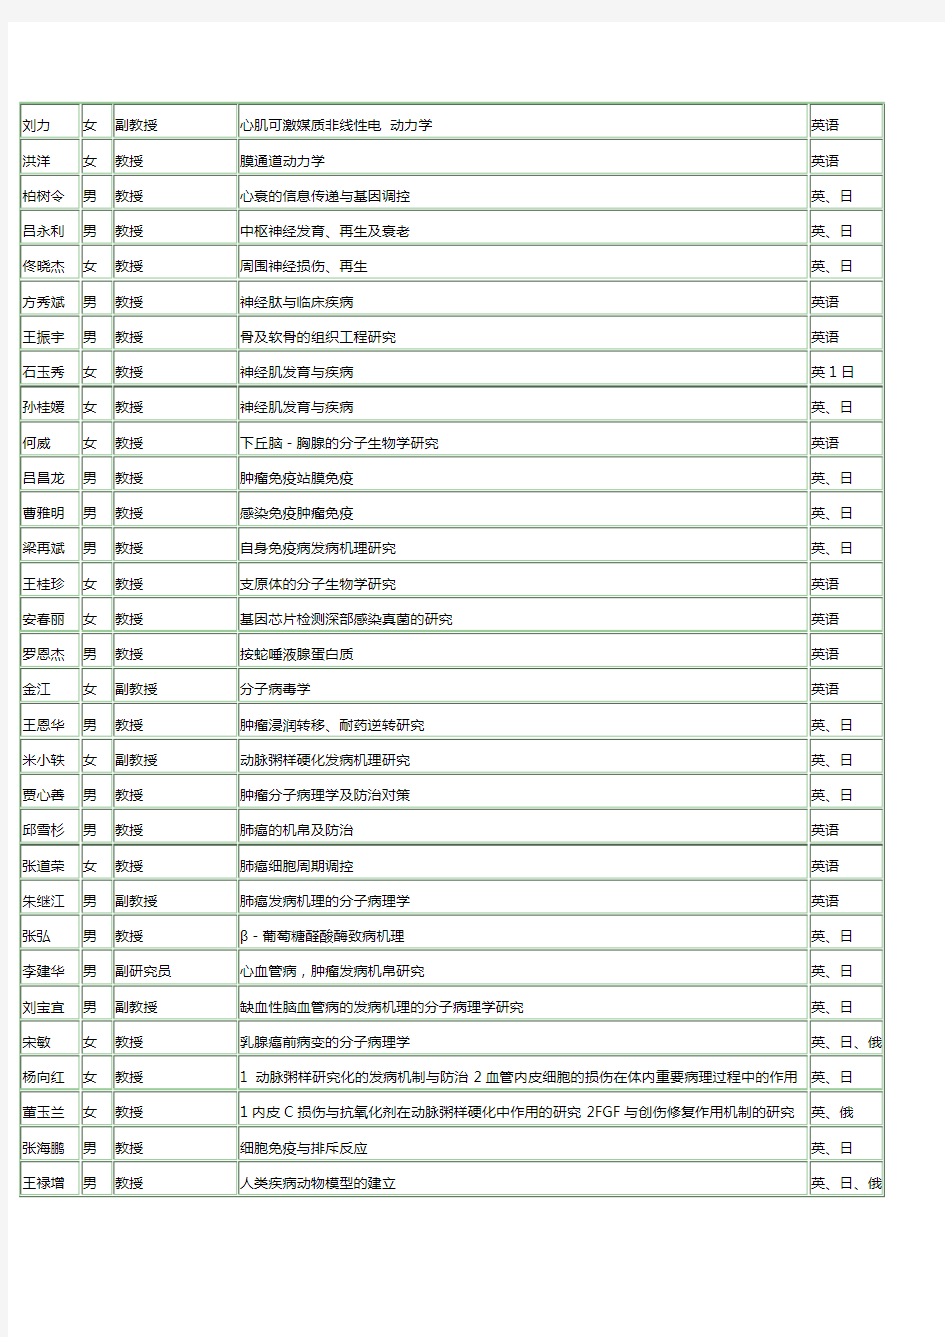 中国医科大导师名单